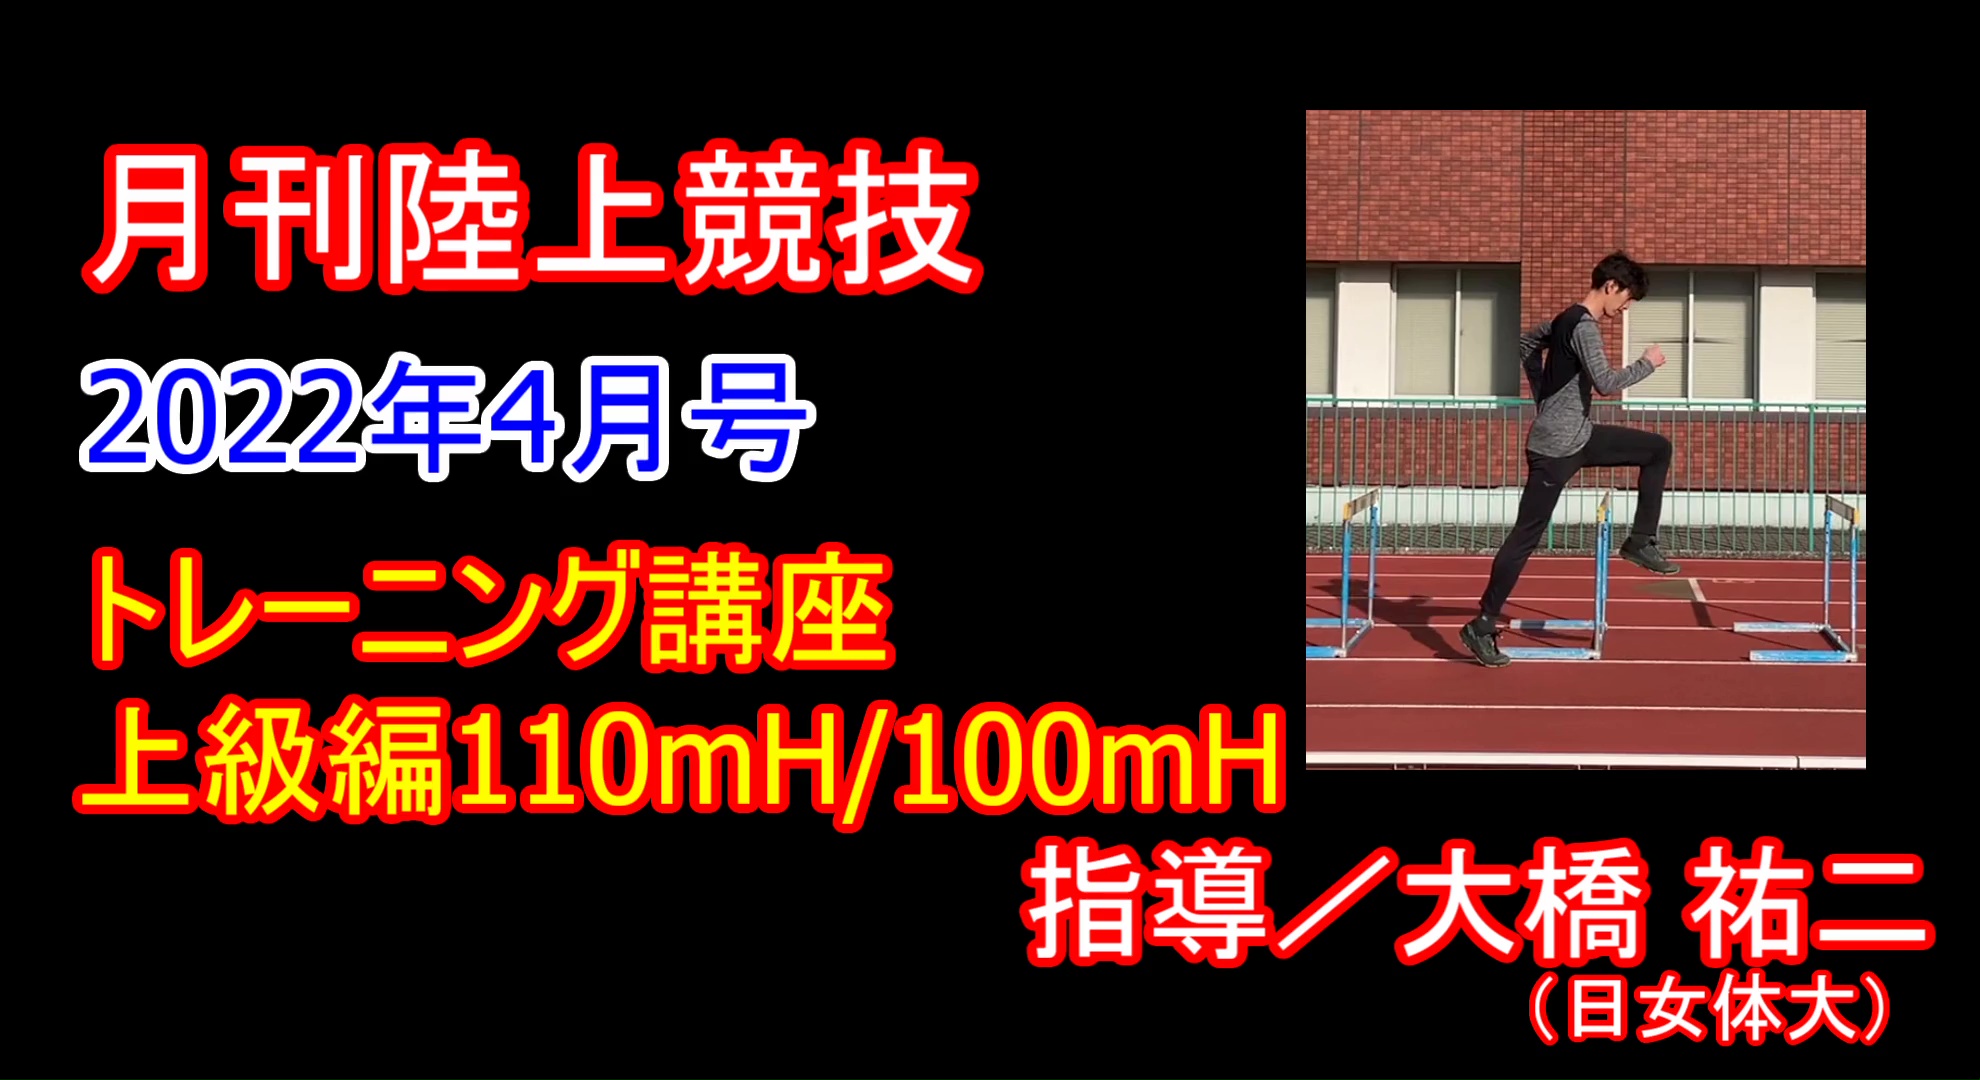 17001円 正規店 ハードル 陸上競技 体育用品 レーンハードル H450 D-192 特殊送料 ランク